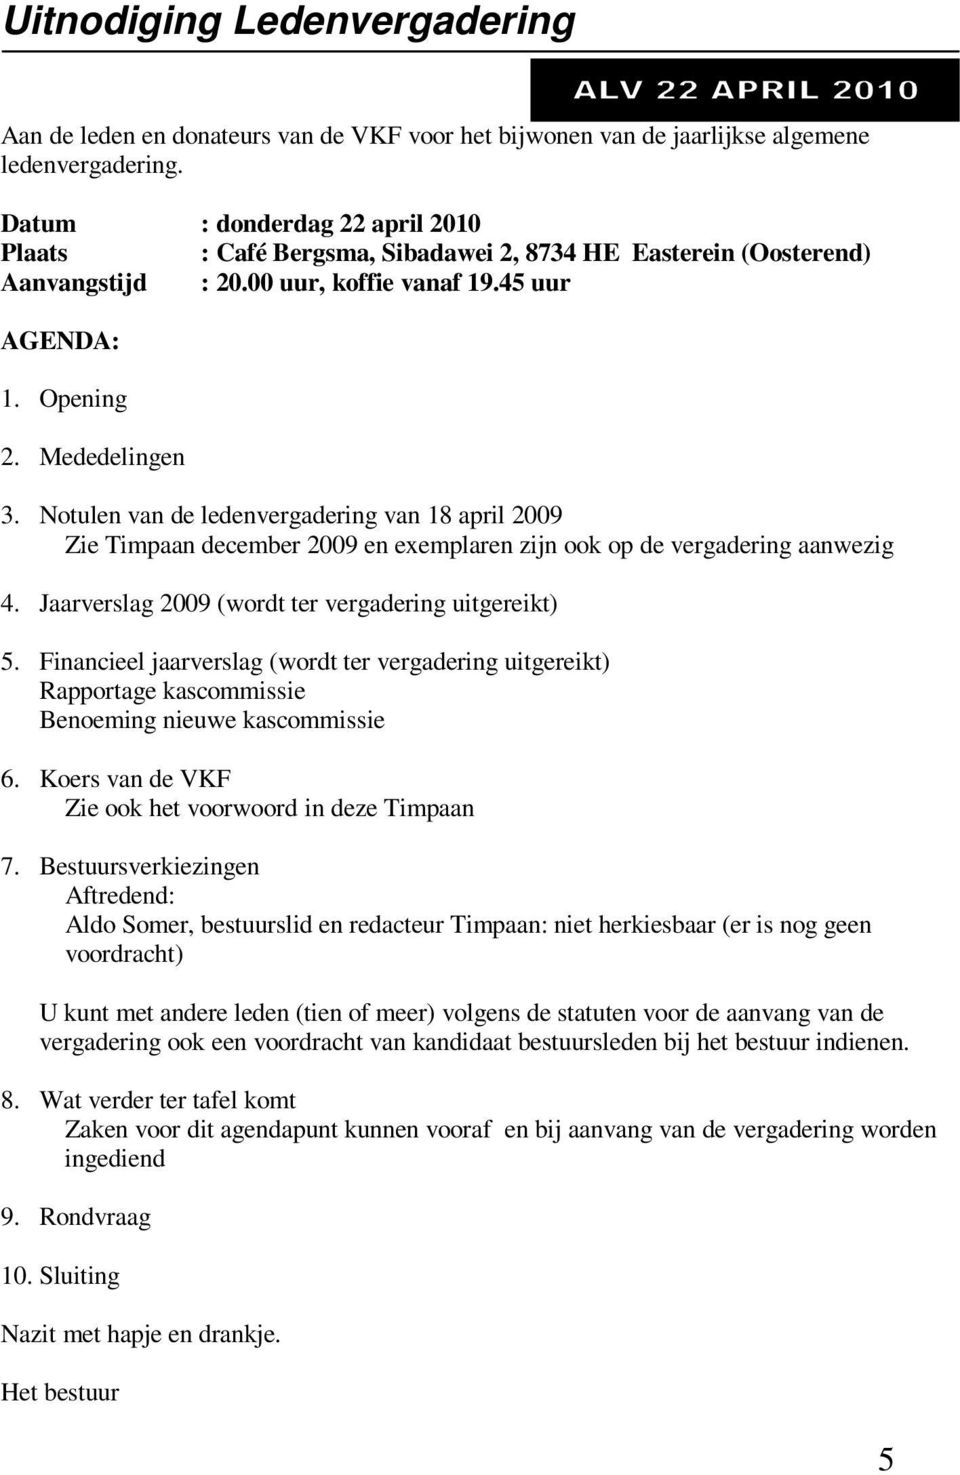 Notulen van de ledenvergadering van 18 april 2009 Zie Timpaan december 2009 en exemplaren zijn ook op de vergadering aanwezig 4. Jaarverslag 2009 (wordt ter vergadering uitgereikt) 5.